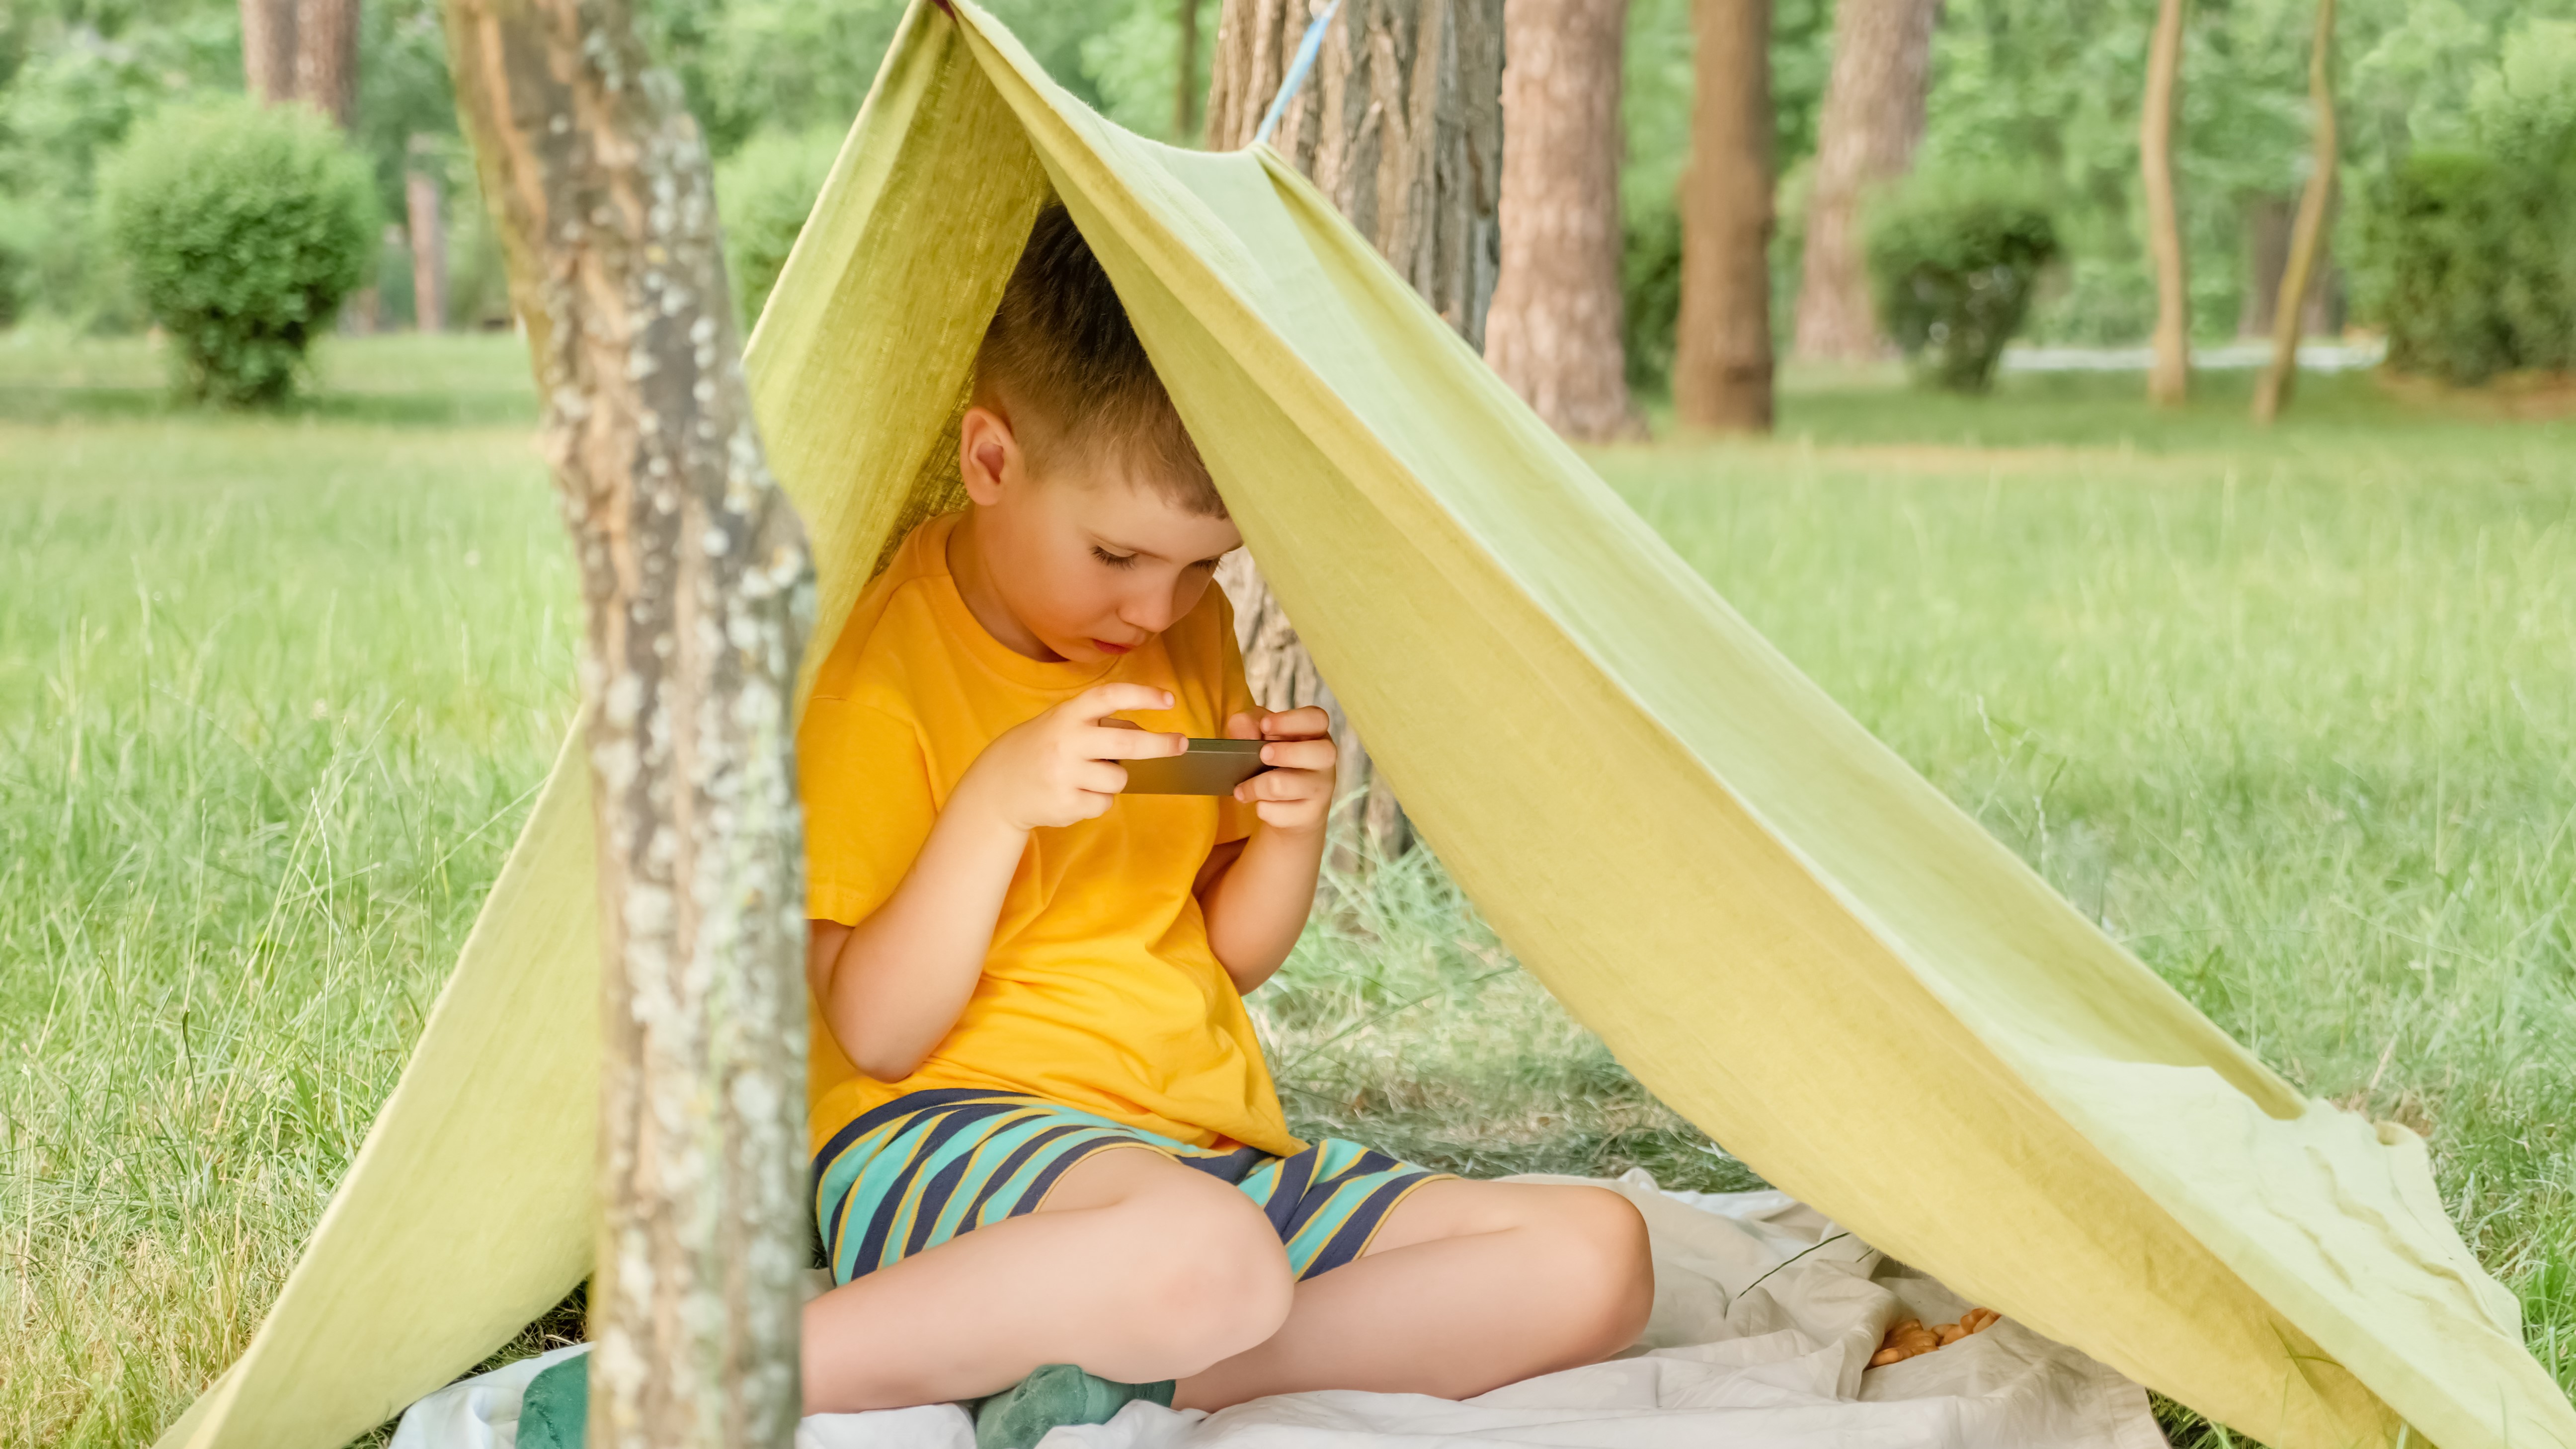 जंगल में एक अस्थायी तंबू में बैठा एक छोटा बच्चा अपने फोन पर नेटफ्लिक्स देख रहा है